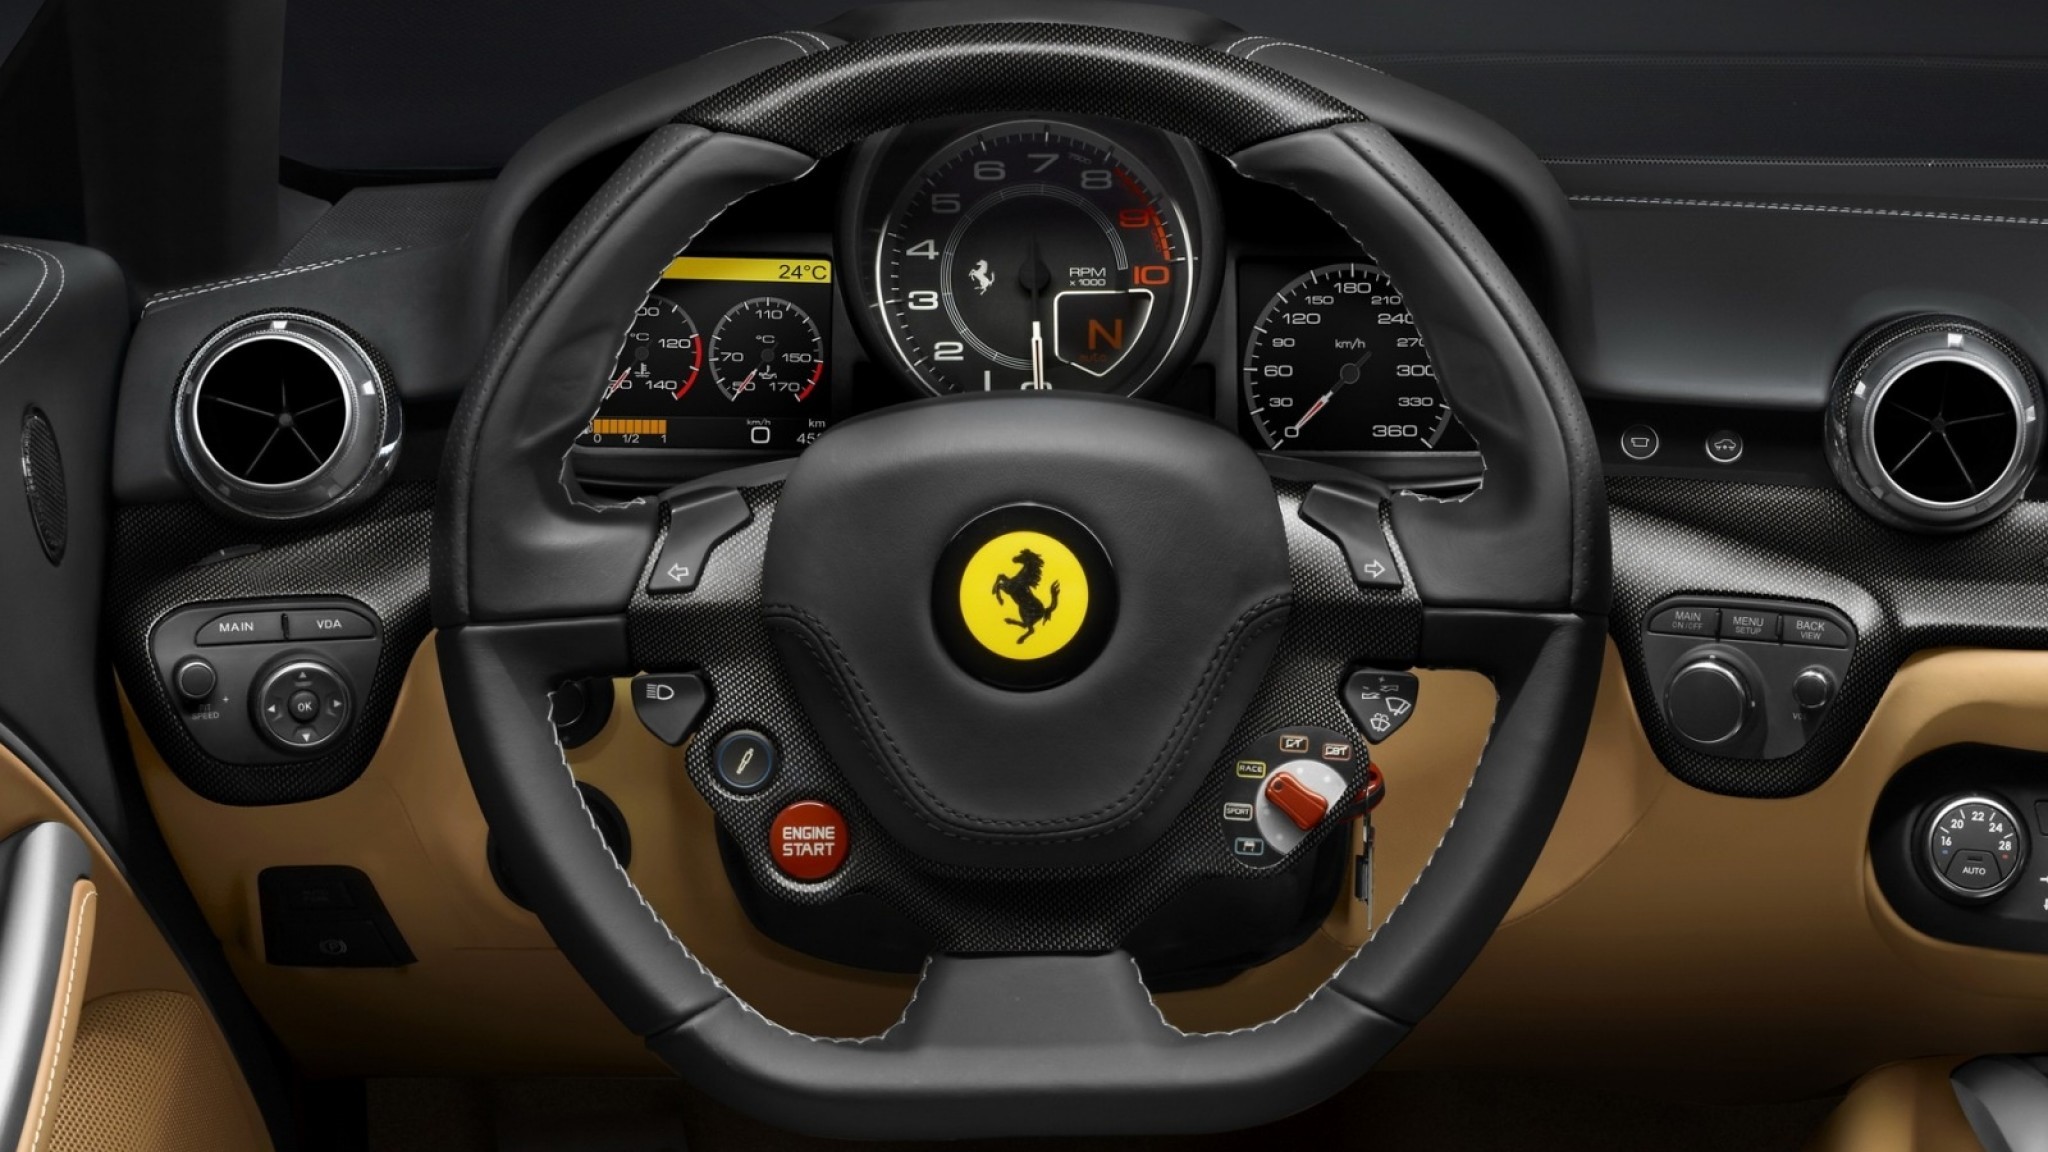 Ferrari F12berlinetta Picture